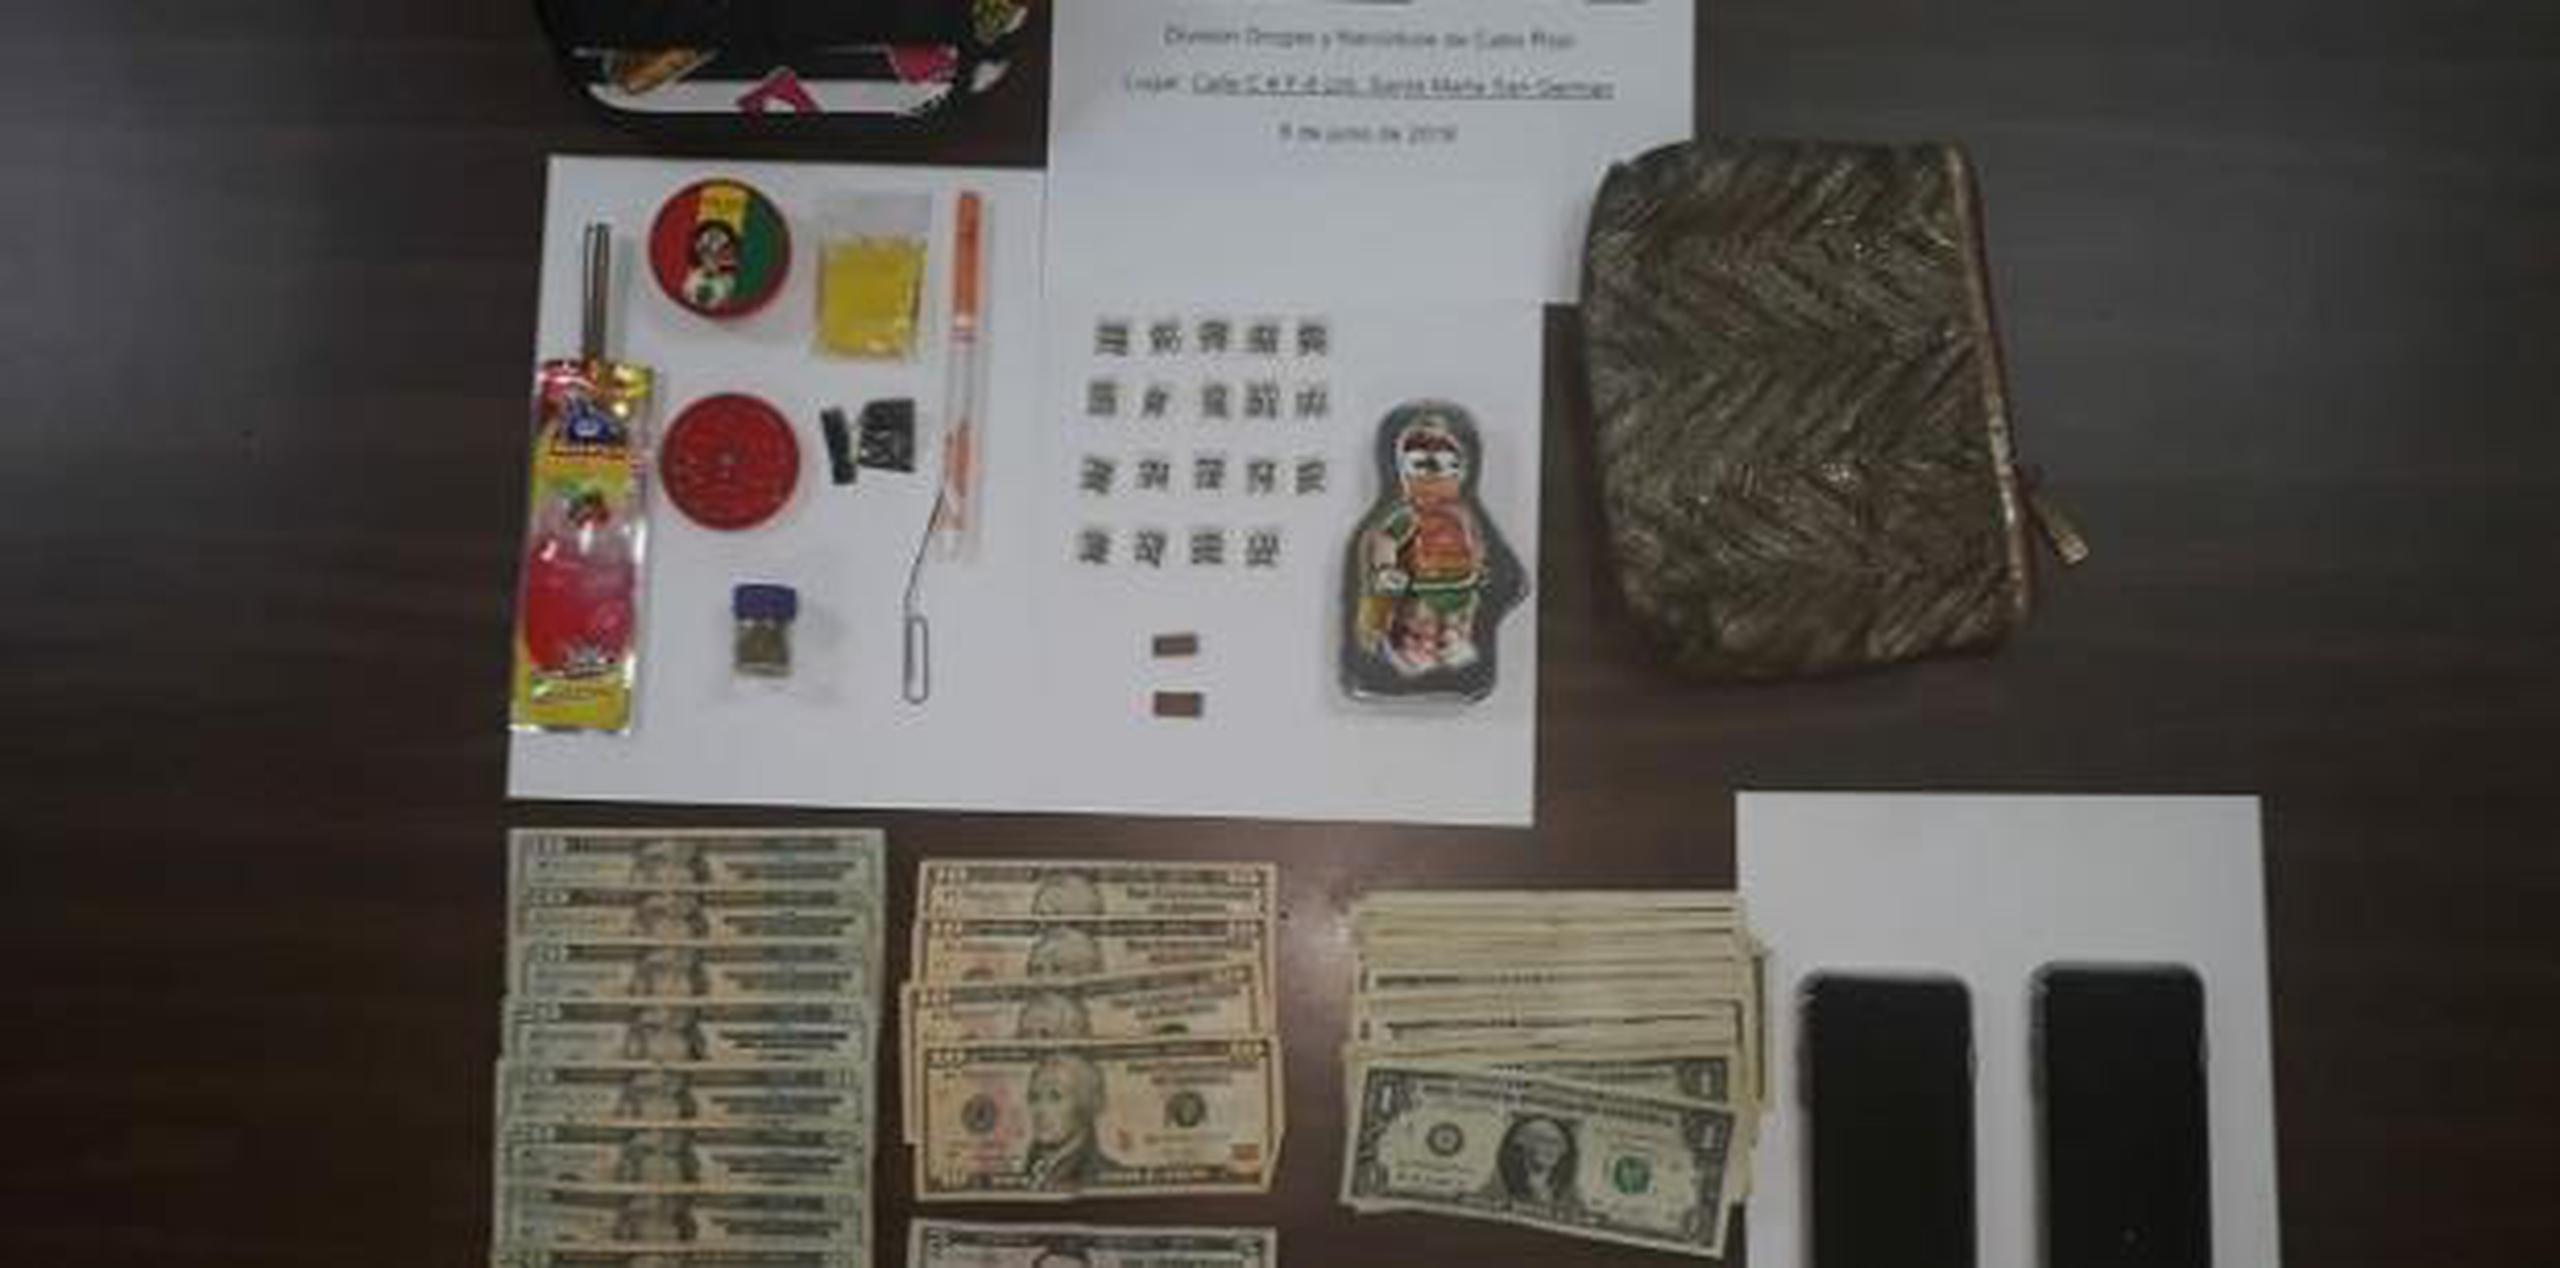 Los agentes ocuparon 19 bolsitas de cocaína, parafernalia para procesar sustancias controladas y $286 en efectivo.  (Suministrada)